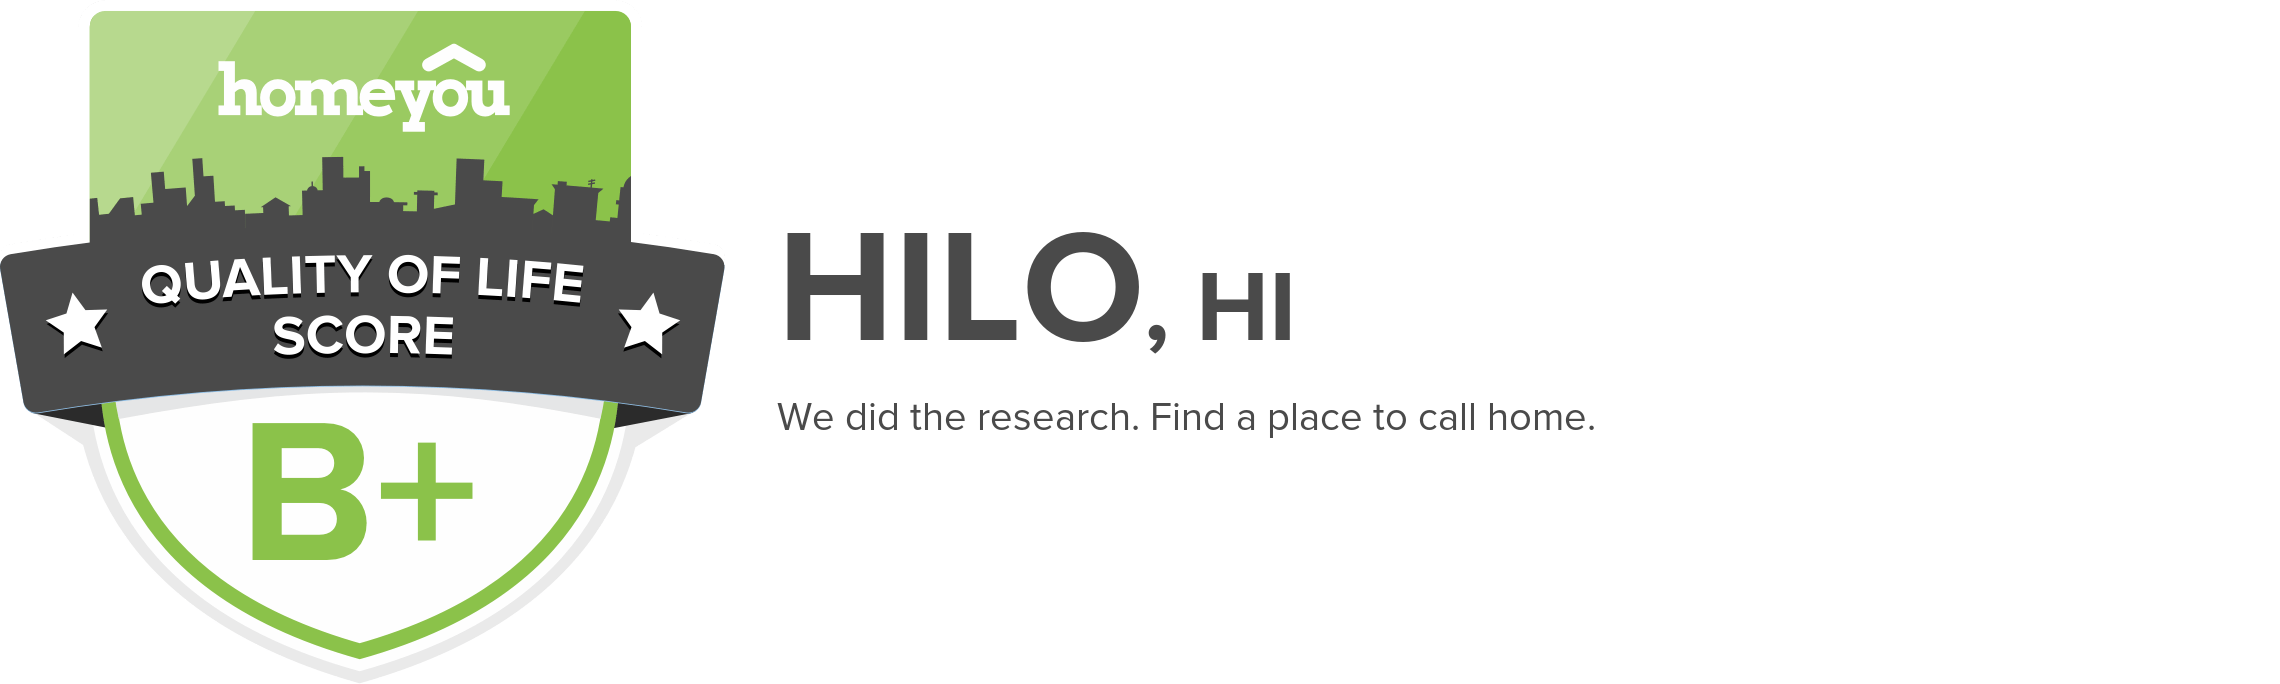 Hilo, HI